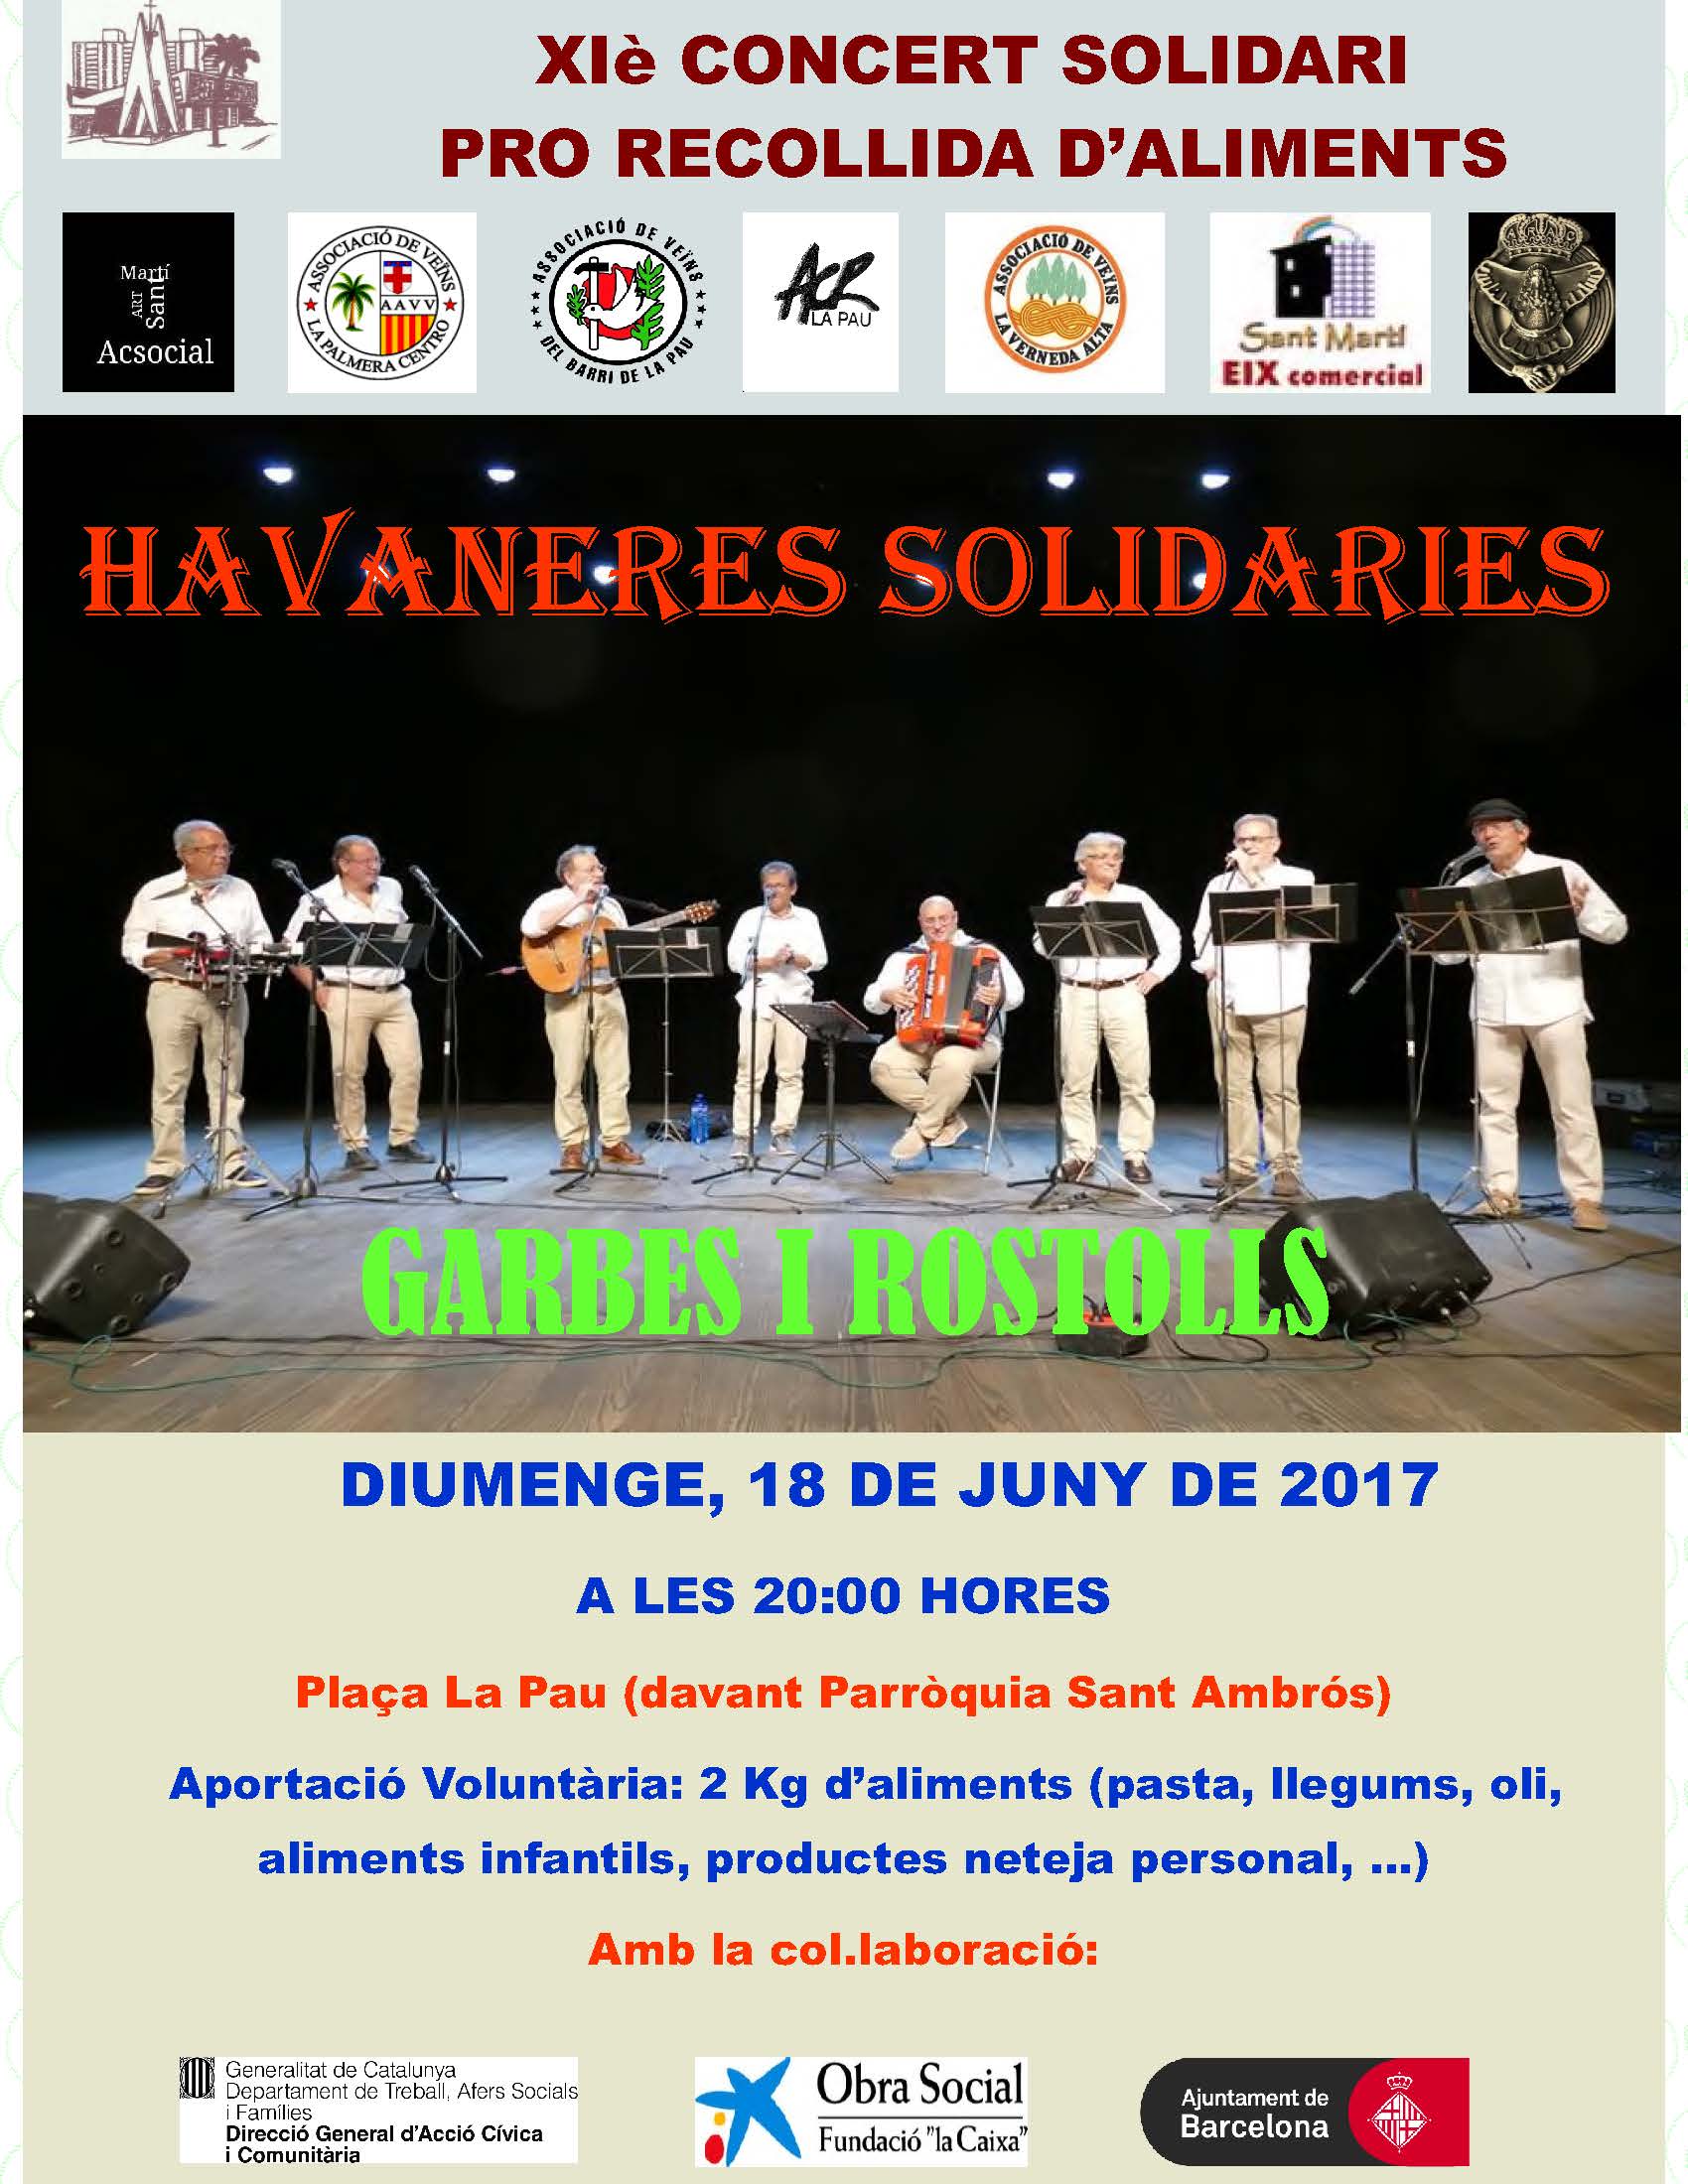 Havaneres solidaries